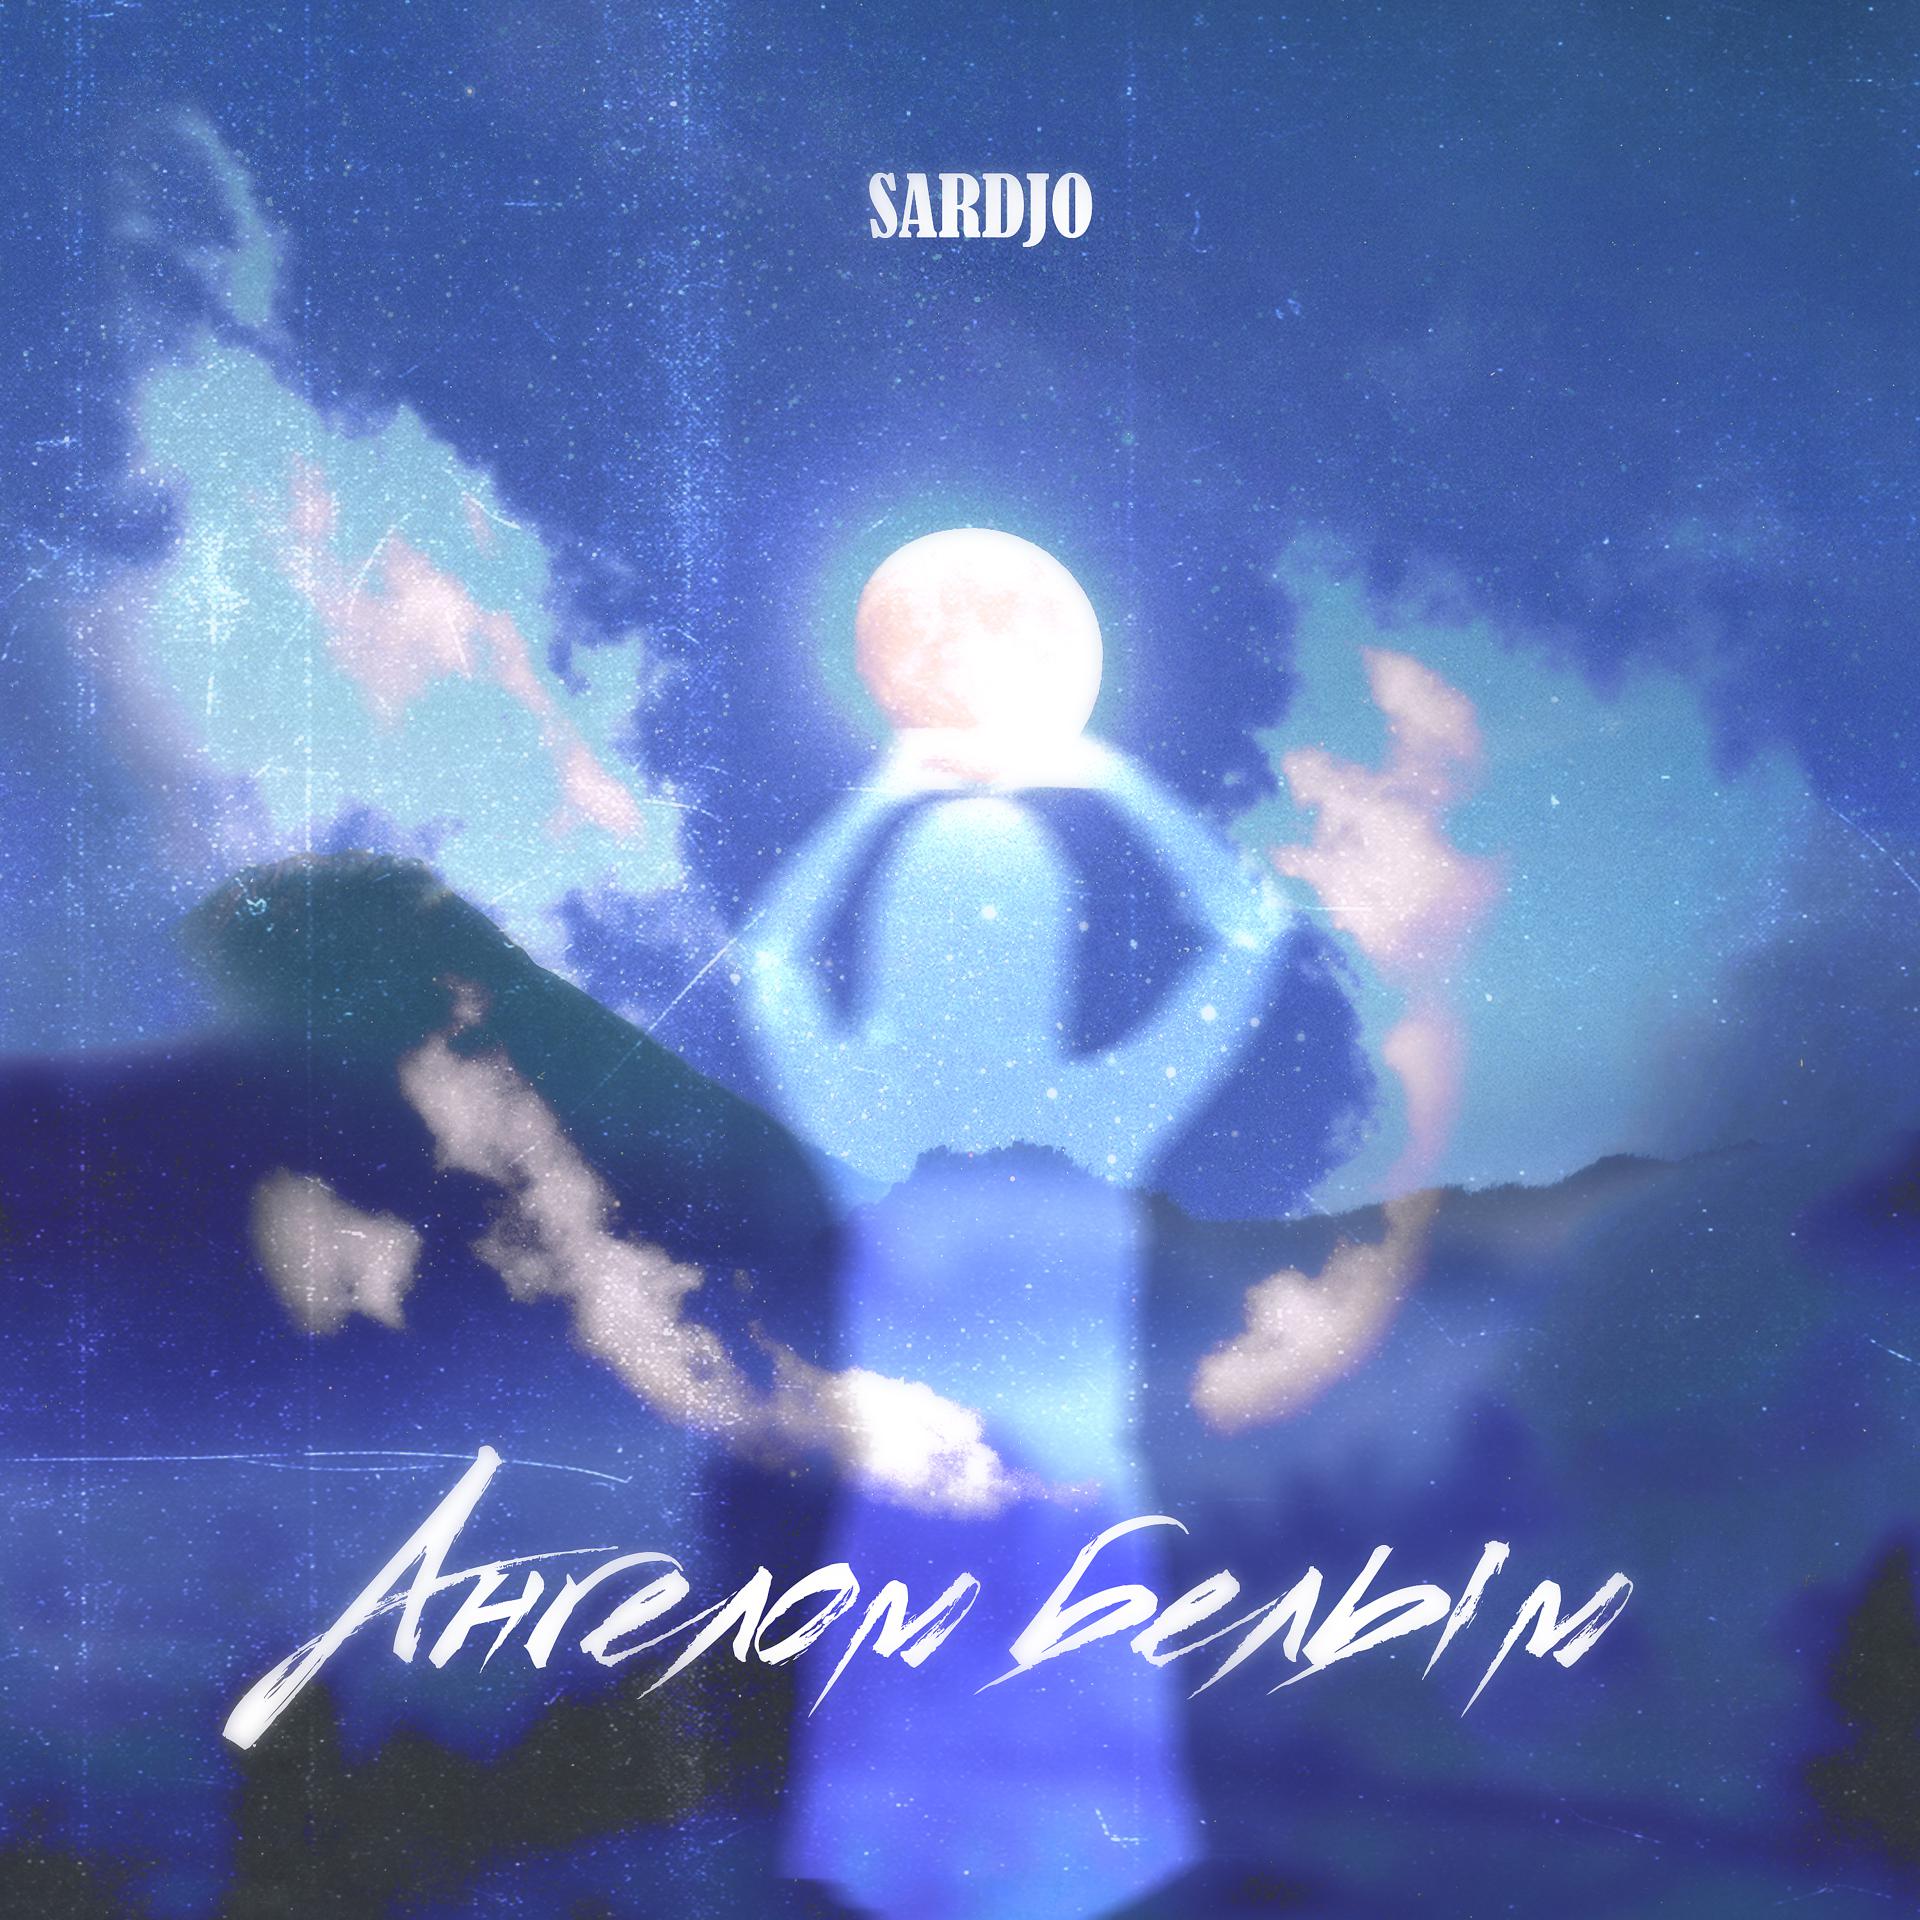 Постер к треку Sardjo - Ангелом белым